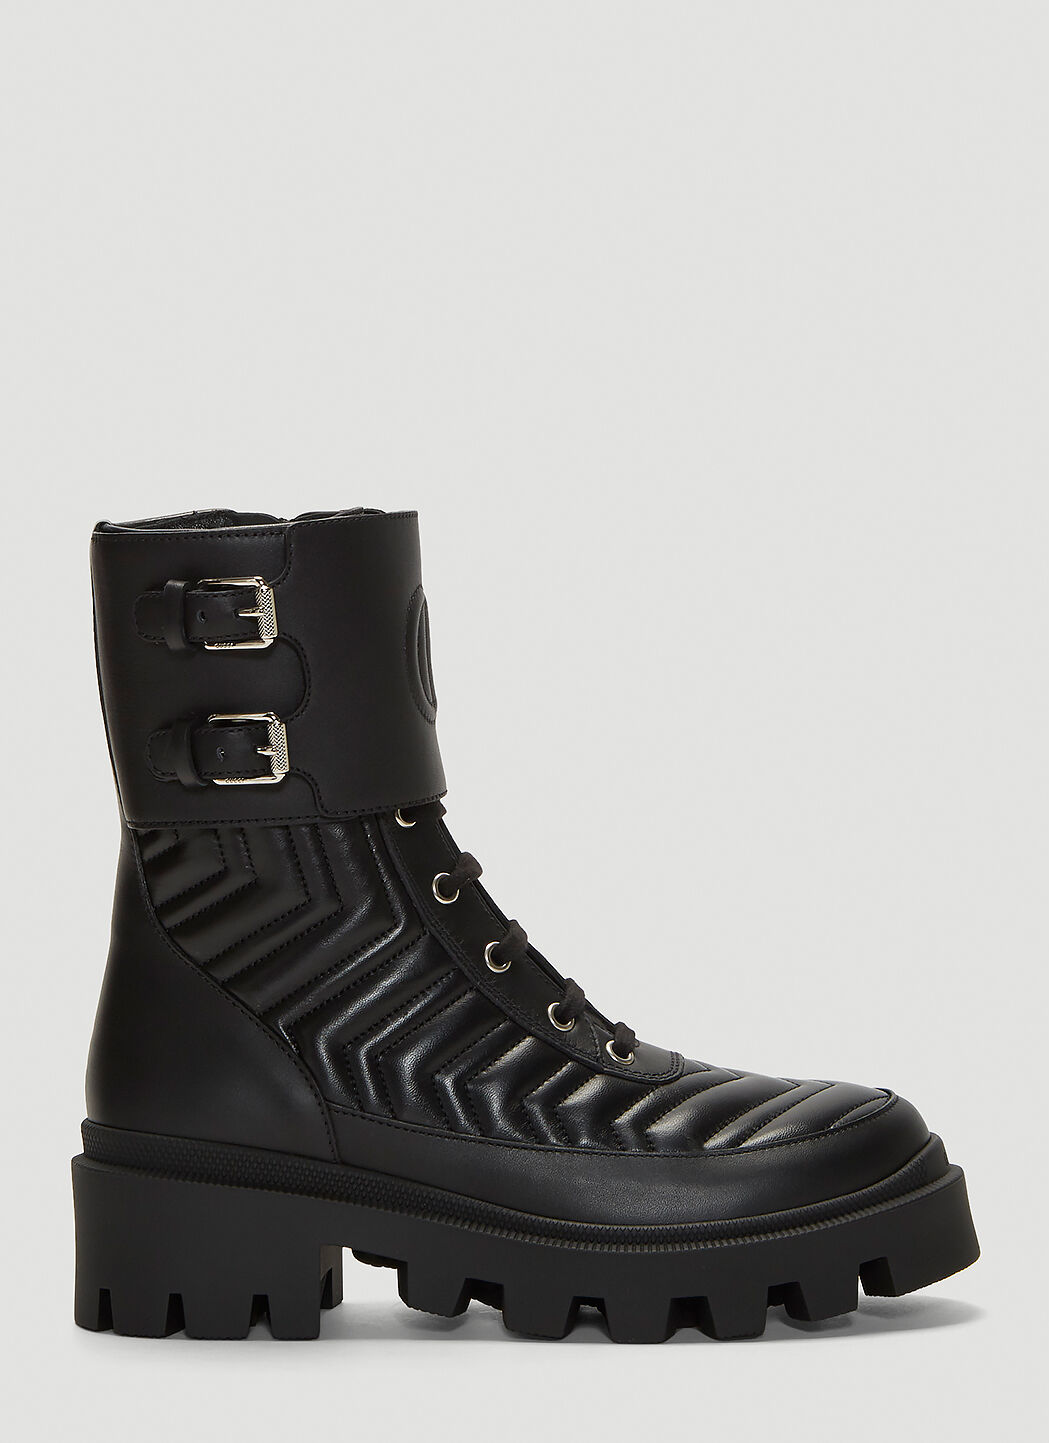 Saint Laurent Frances Leather Boots   黑色 sla0231015